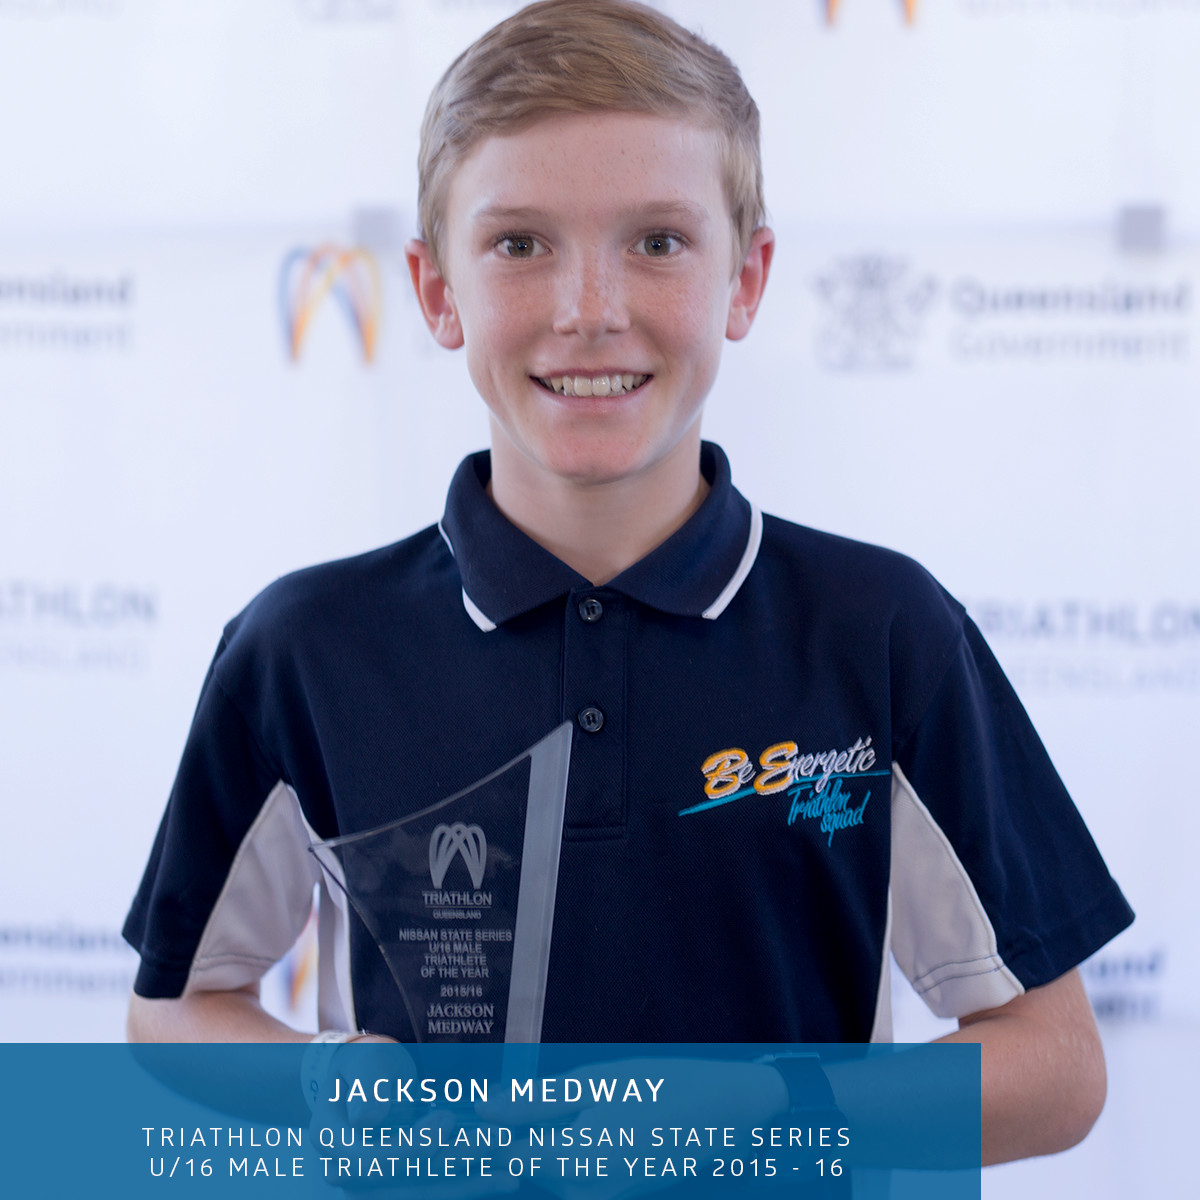 Jackson Medway U16 triathlete